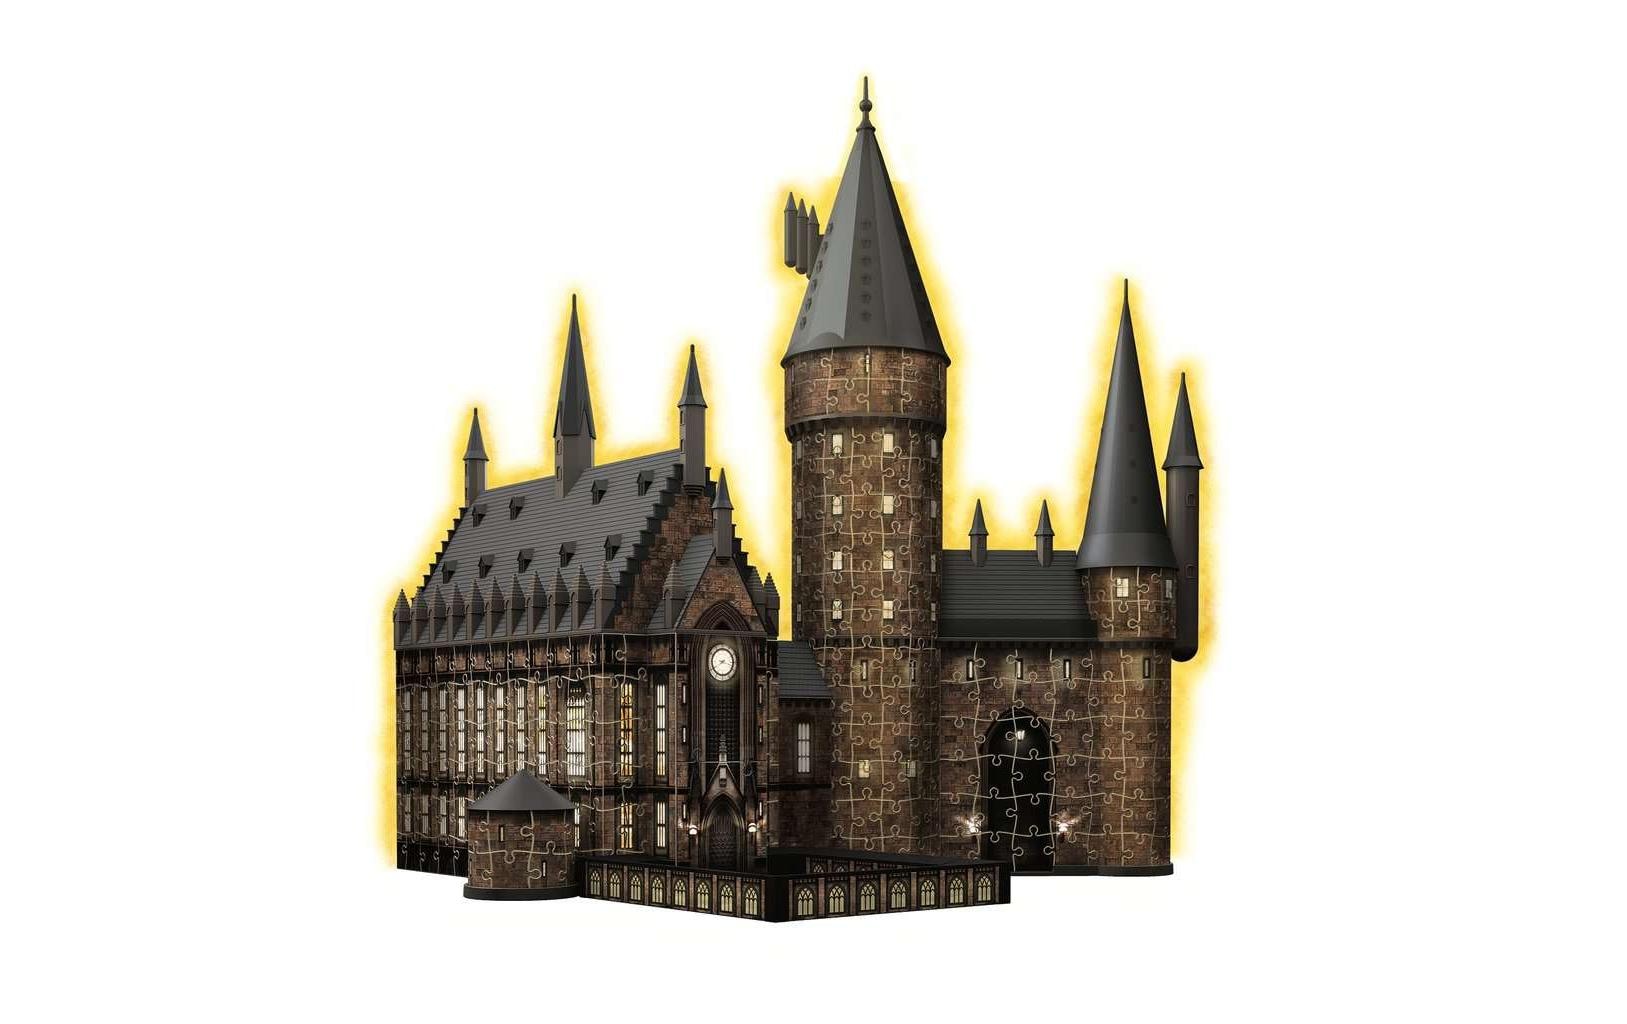 Ravensburger 3D-Puzzle »Hogwarts Schloss Die Grosse Halle«, (540 tlg.)